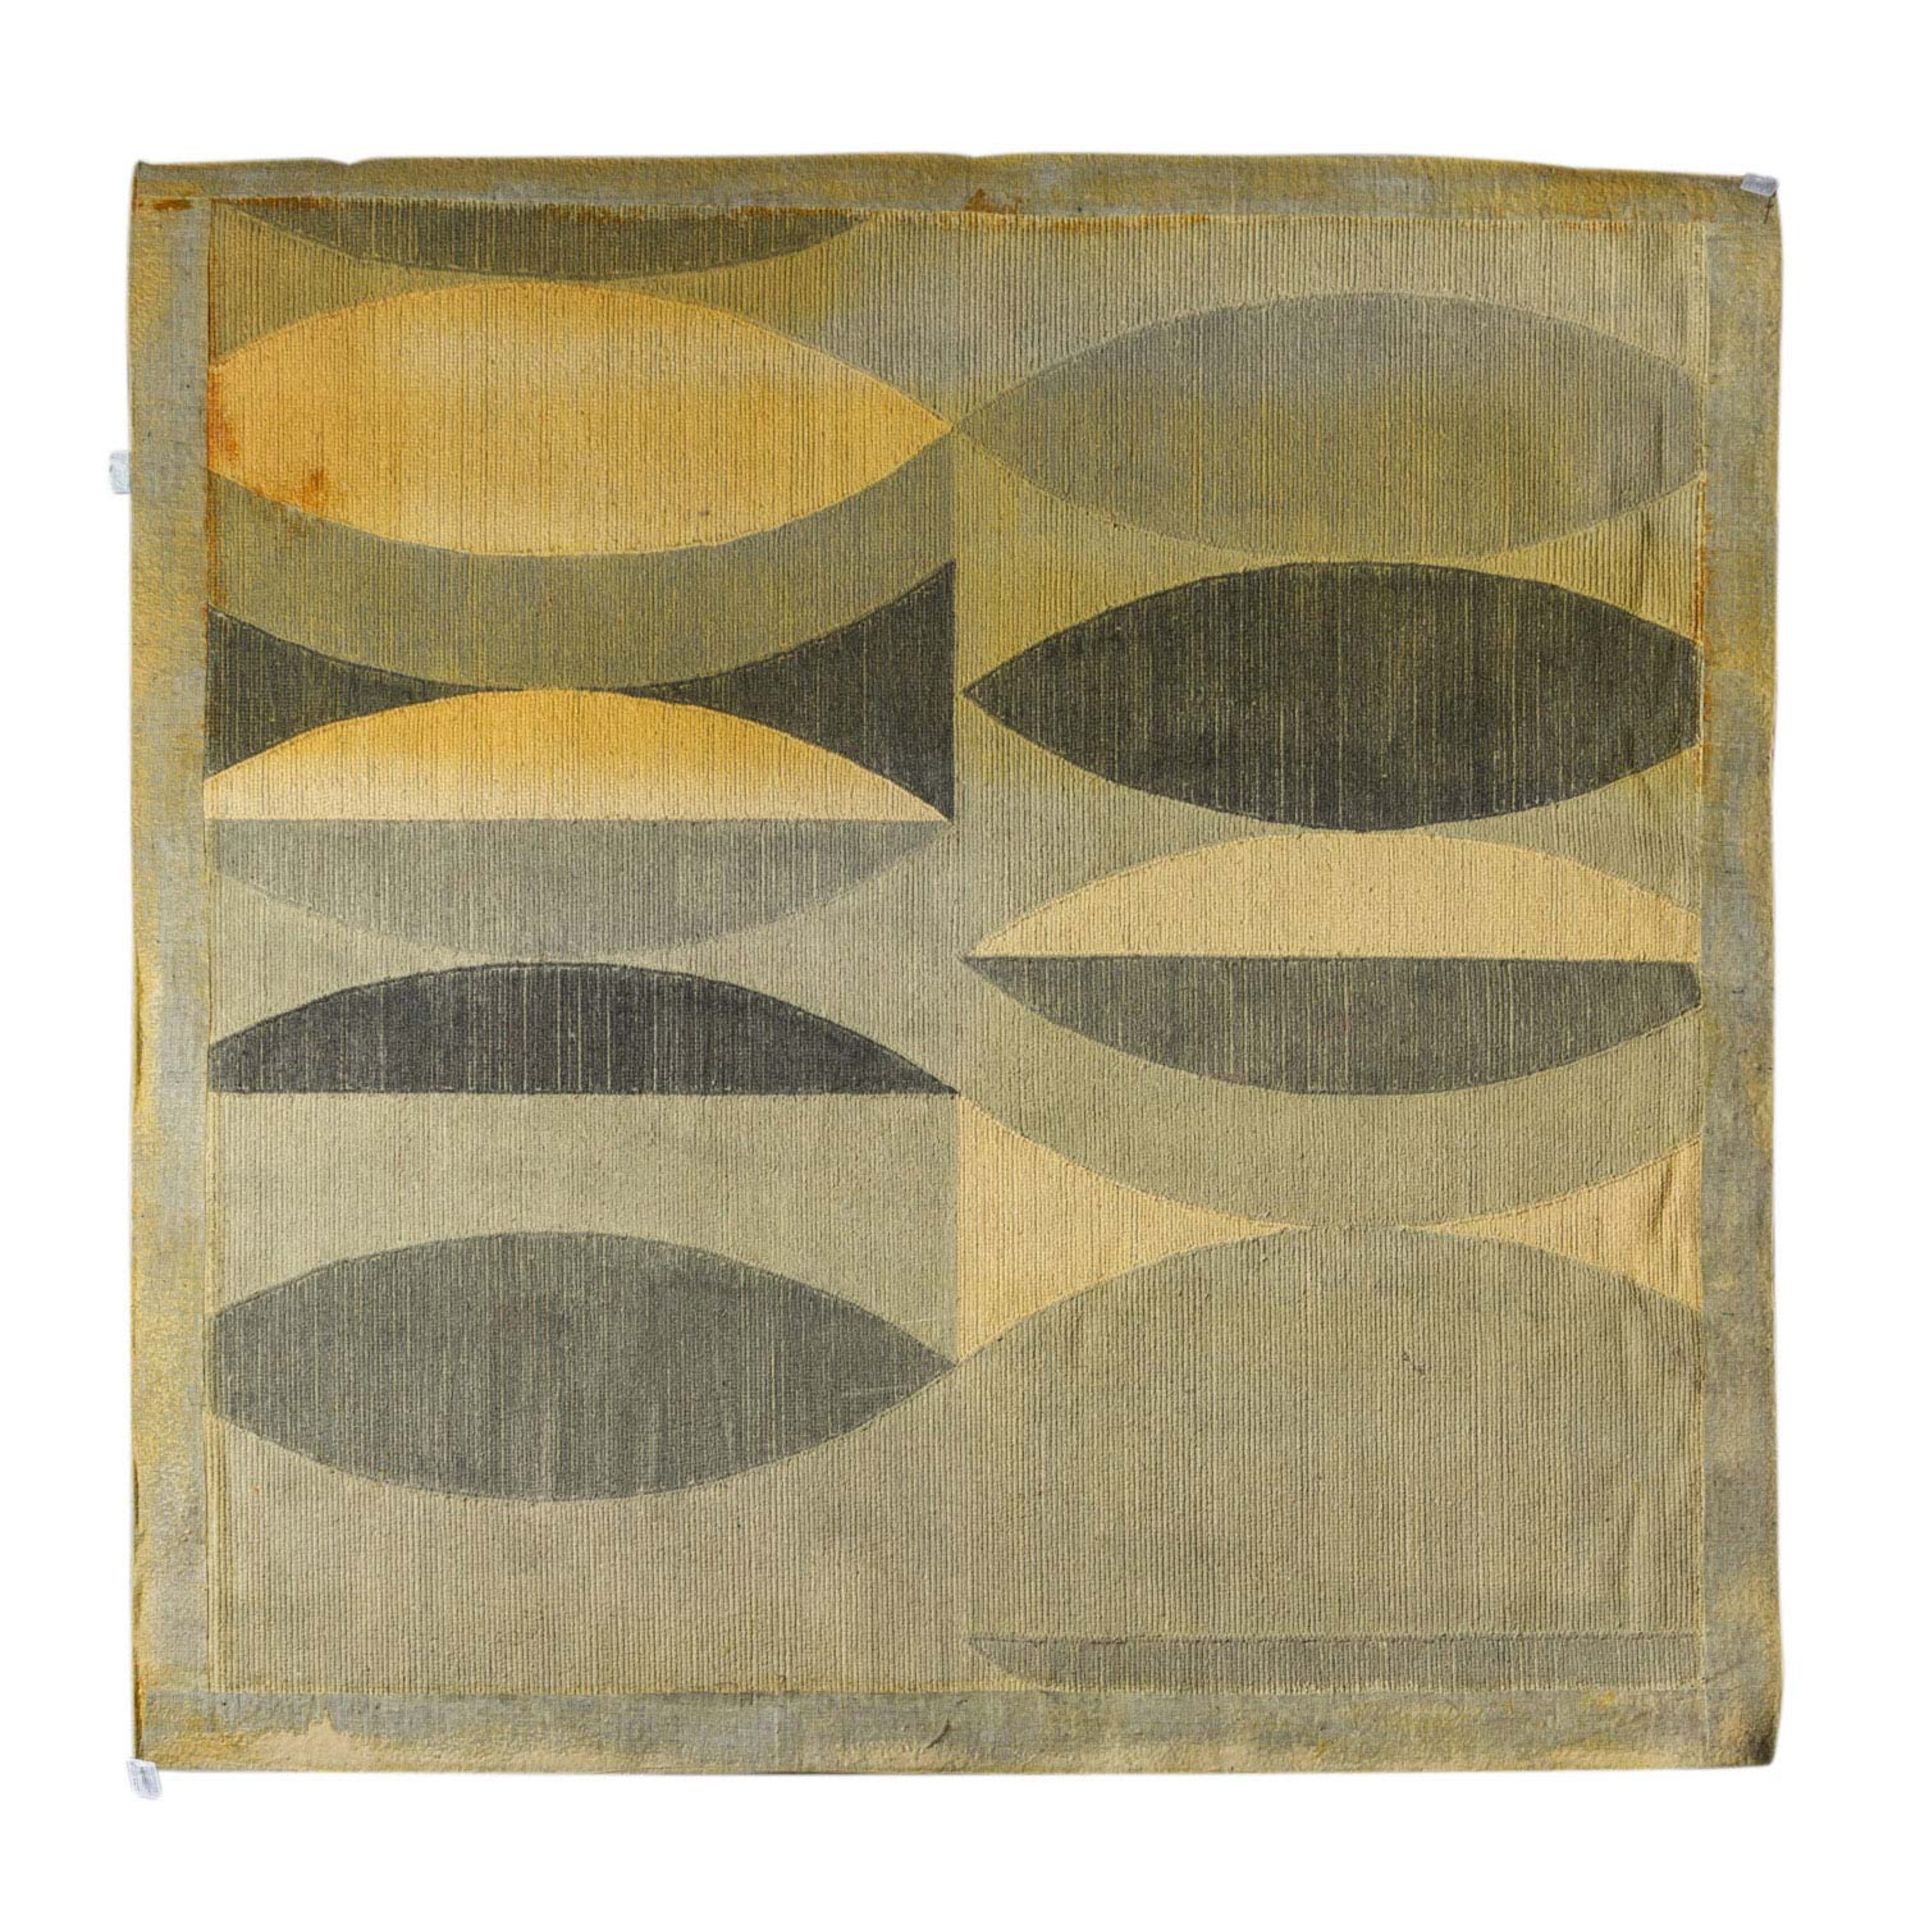 Design Teppich aus Wolle. 1970er Jahre, 200x196 cm.Großzügig, geometrisch gemustert mit großen - Image 2 of 2